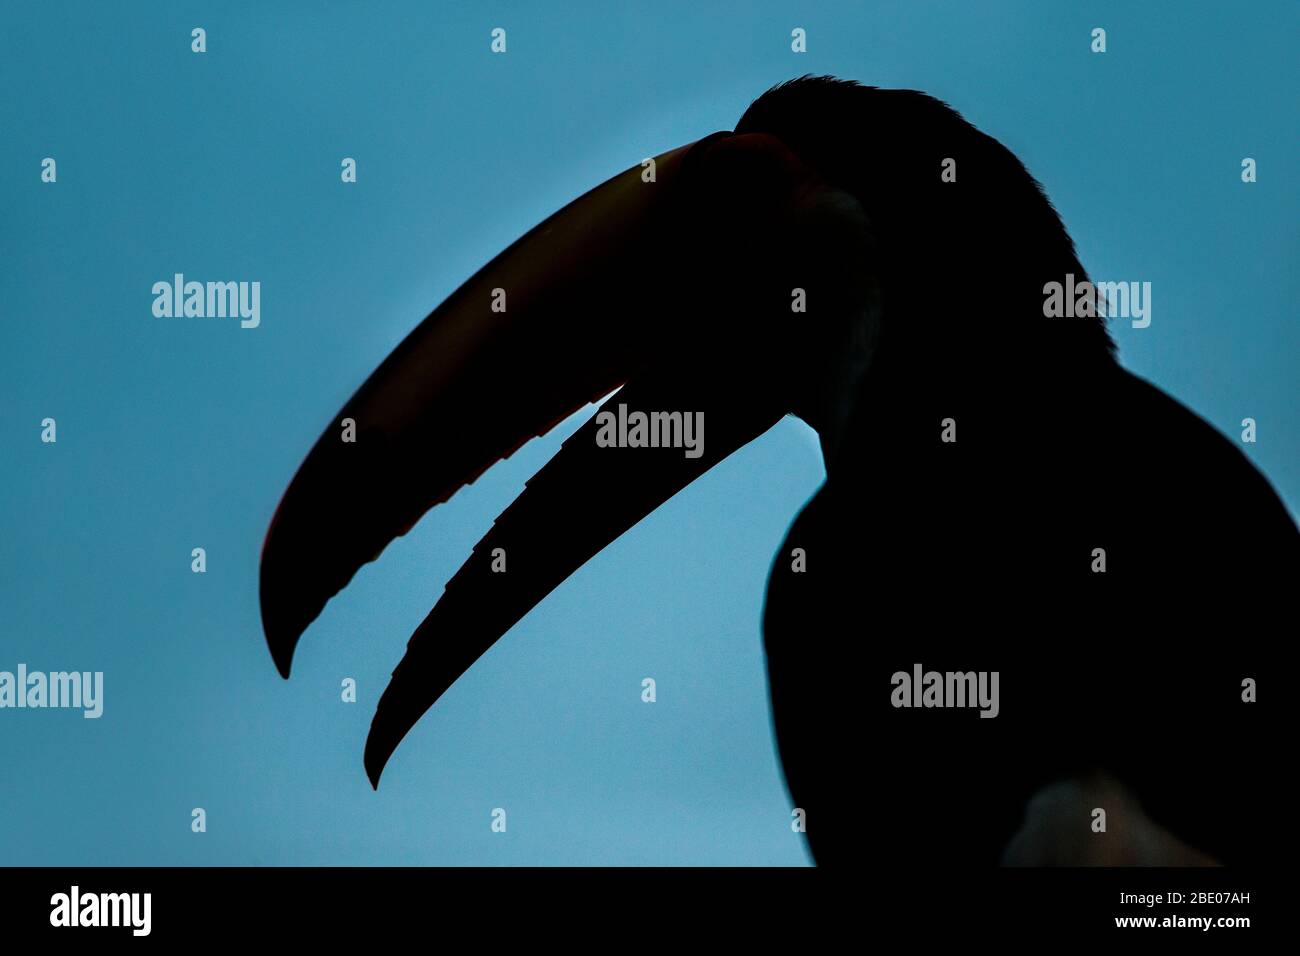 Toco toucan silhouette, Mato Grosso, Brazil Stock Photo